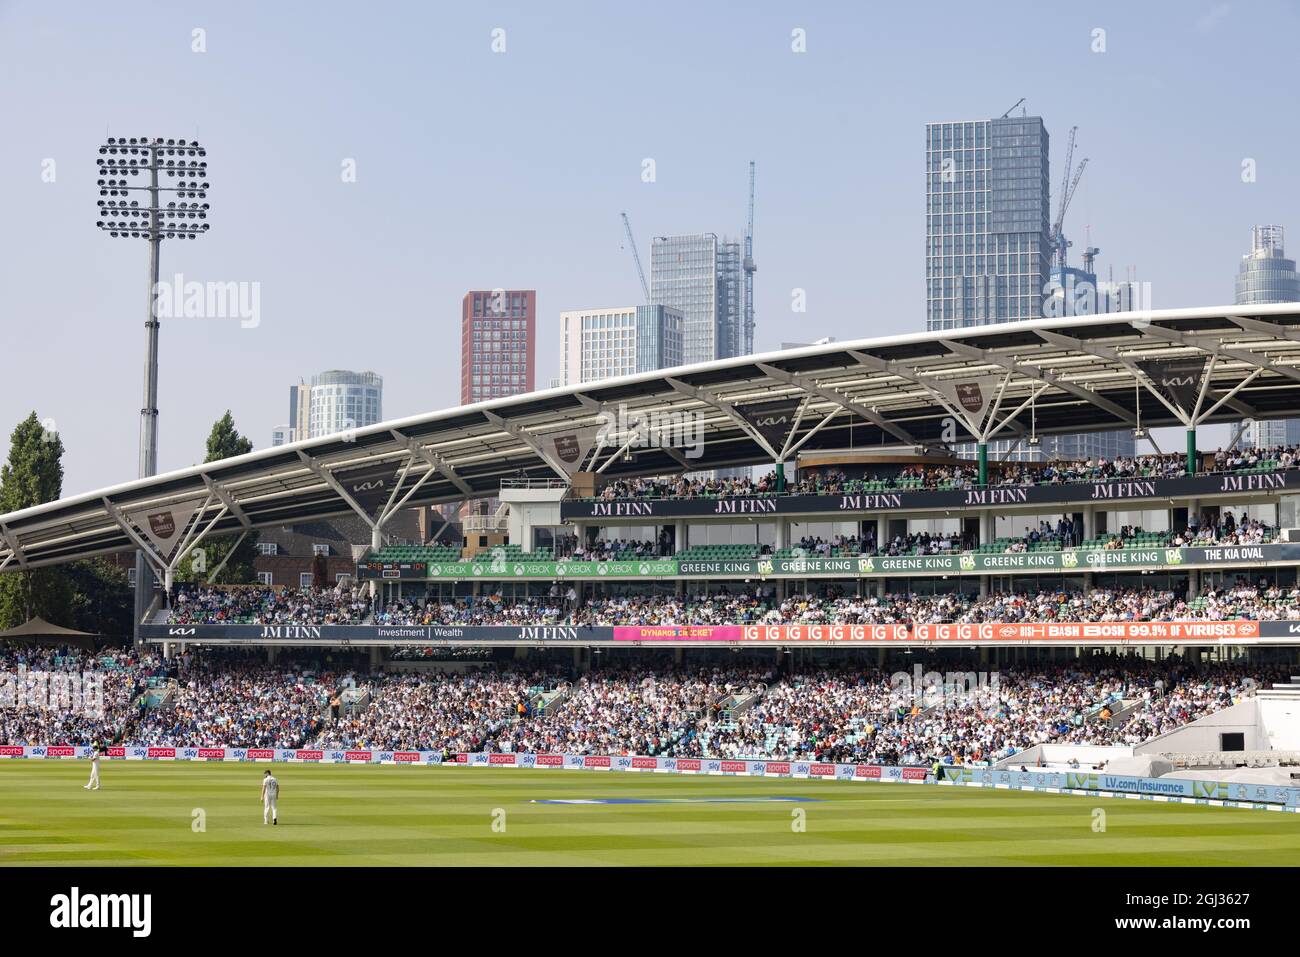 Le stand JM Finn, avec la foule, le terrain de cricket ovale, appelé le Kia Oval, domicile du club de cricket du comté de Surrey, Kennington, Londres, Royaume-Uni Banque D'Images